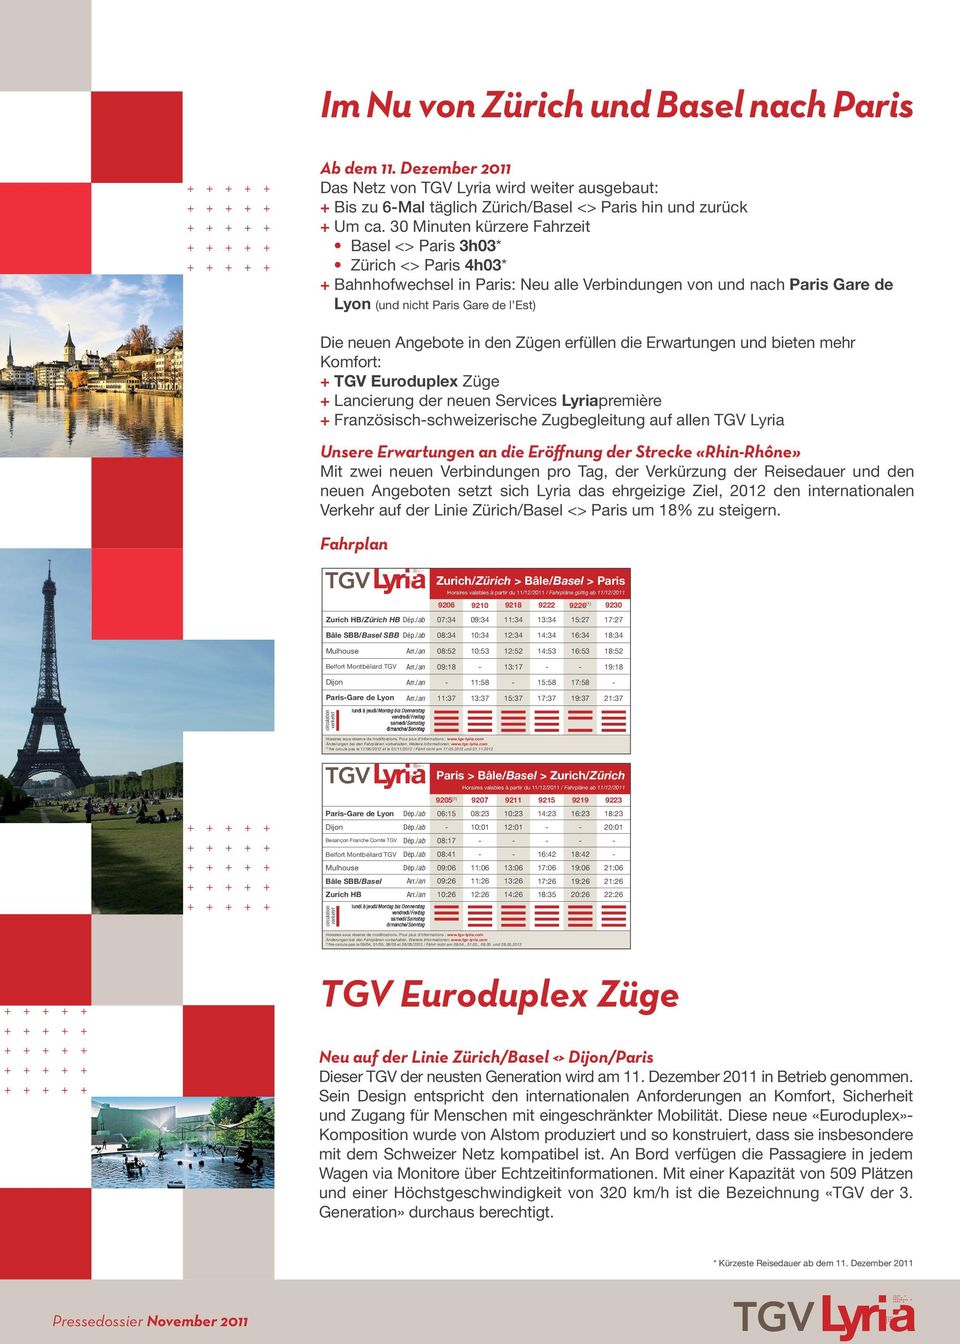 Angebote in den Zügen erfüllen die Erwartungen und bieten mehr Komfort: + TGV Euroduplex Züge + Lancierung der neuen Services Lyriapremière + Französischschweizerische Zugbegleitung auf allen TGV